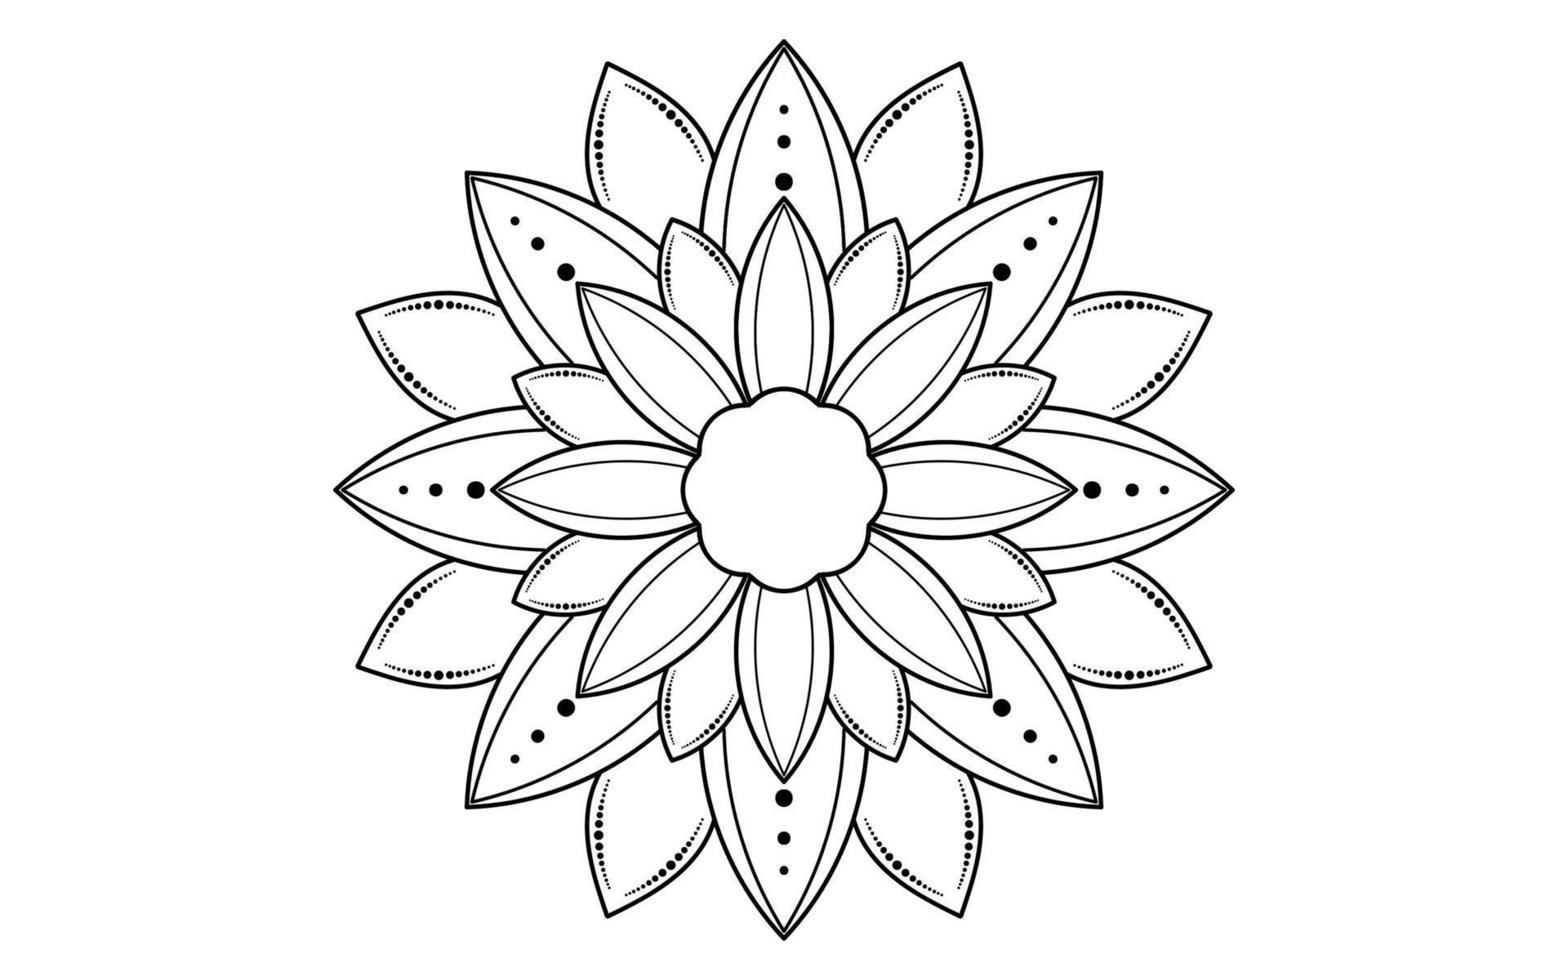 mandala bloemmotief, vintage decoratieve elementen vector